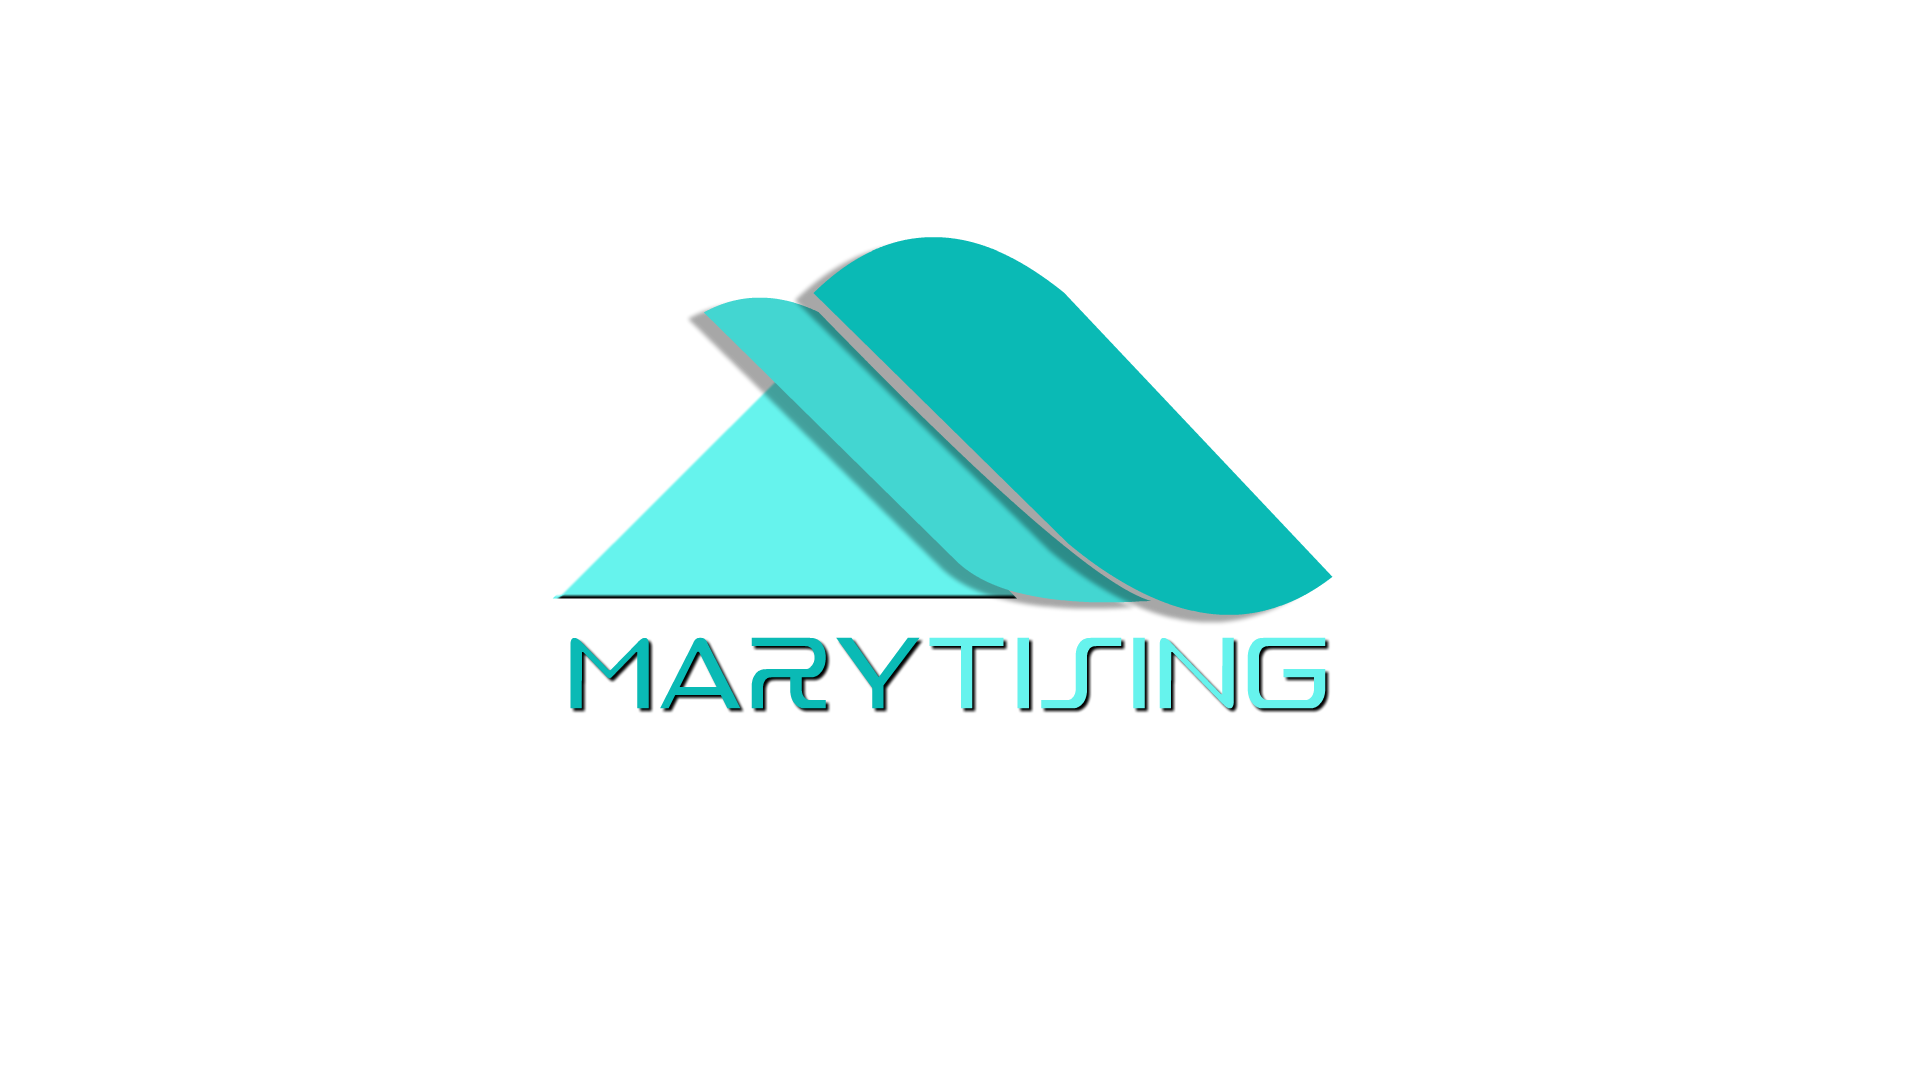 طراحی لوگو و موشن لوگوی ماریتایزینگ (Marytising)